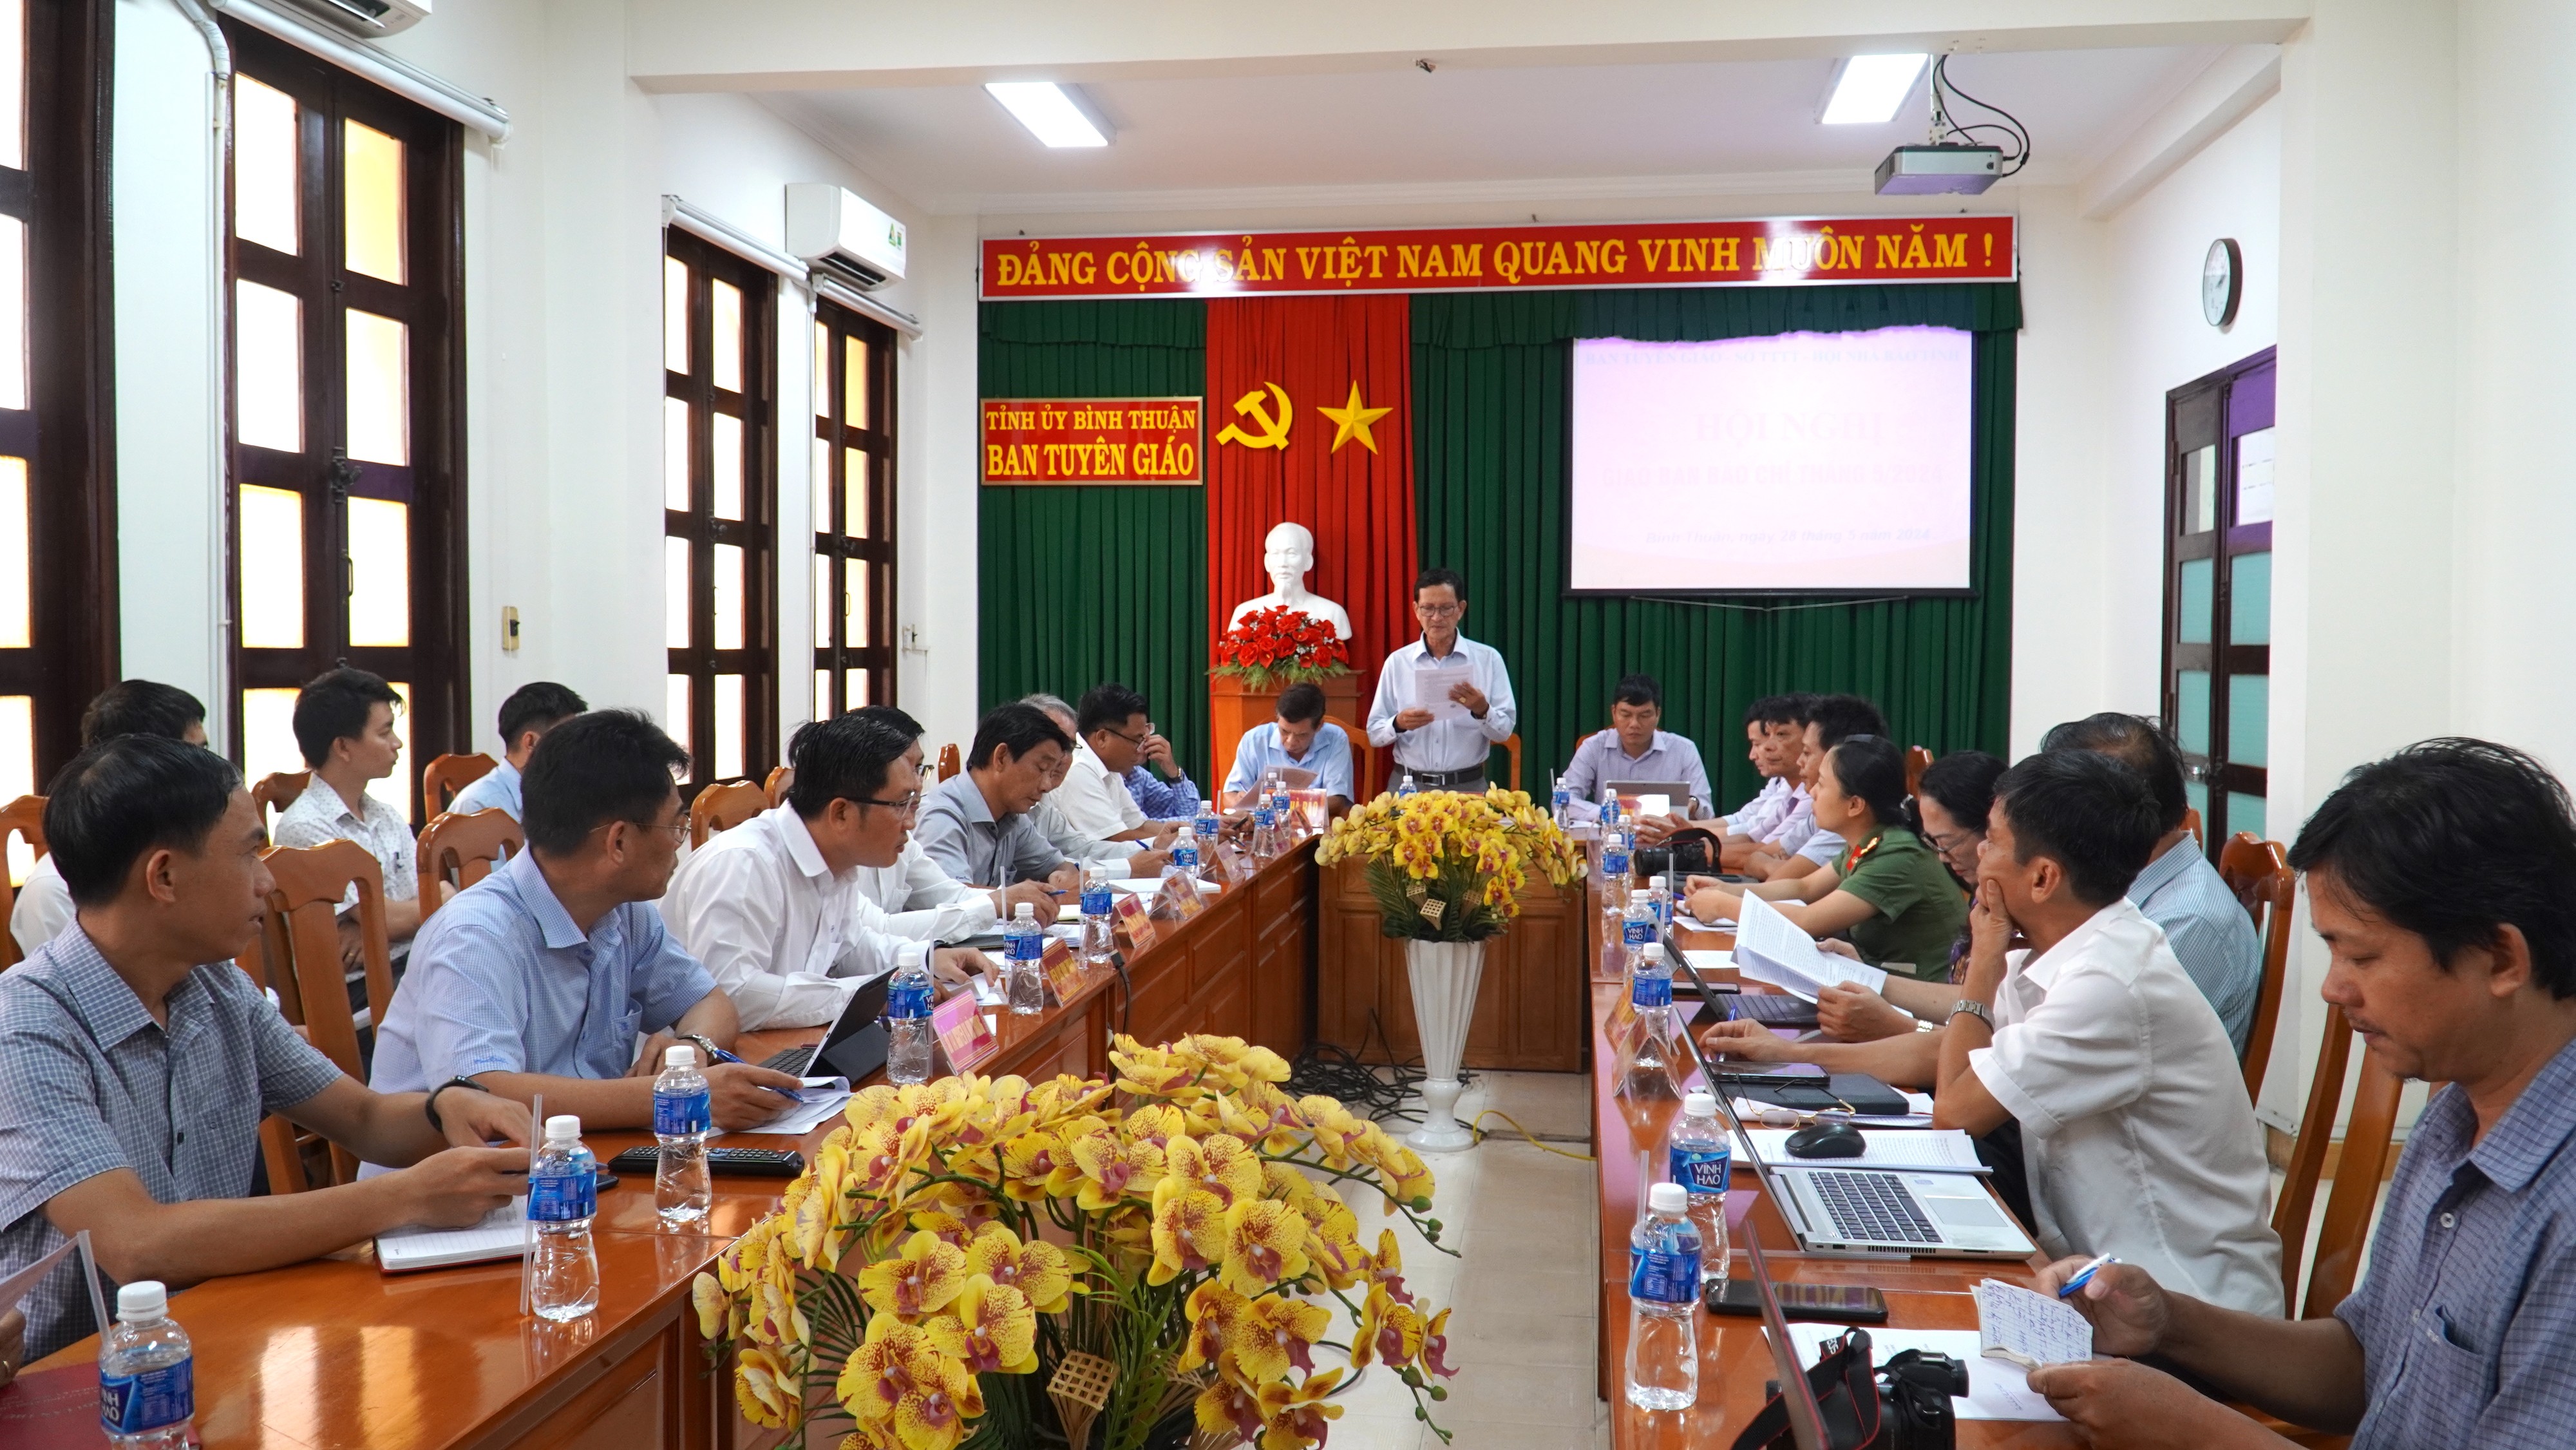 Toàn cảnh - Vụ lũ cát ở Bình Thuận: Chủ đầu tư lấy đất chắn, khi nguy hiểm phải di dời dân (Hình 2).